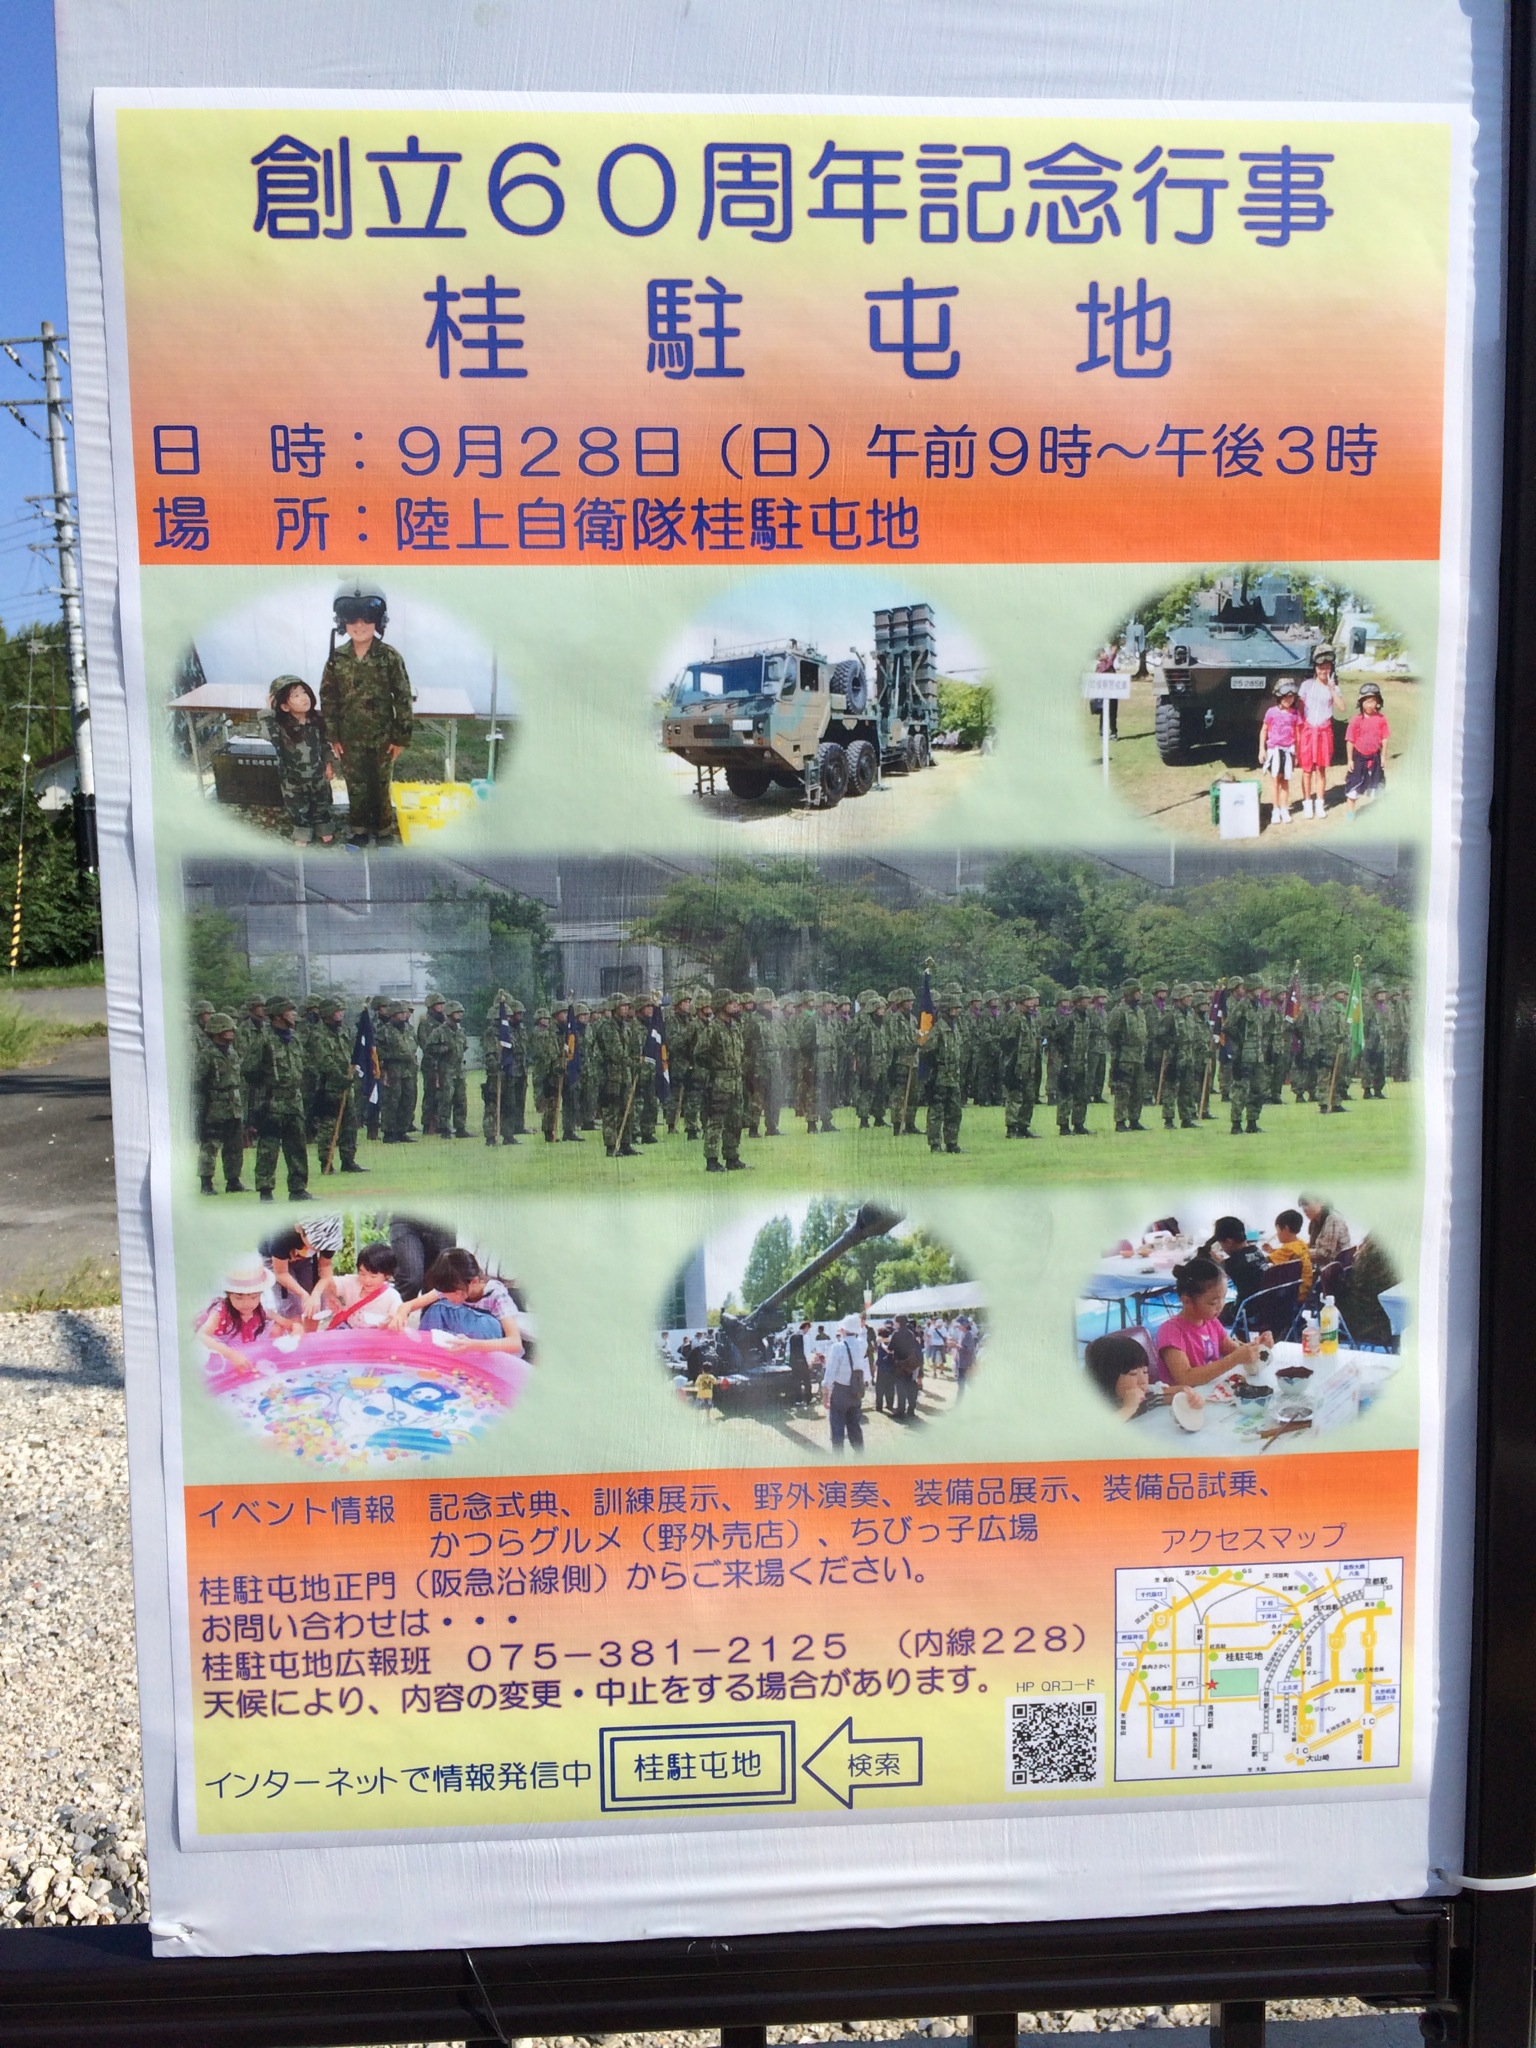 9月28日は桂の陸上自衛隊の60周年イベントです！